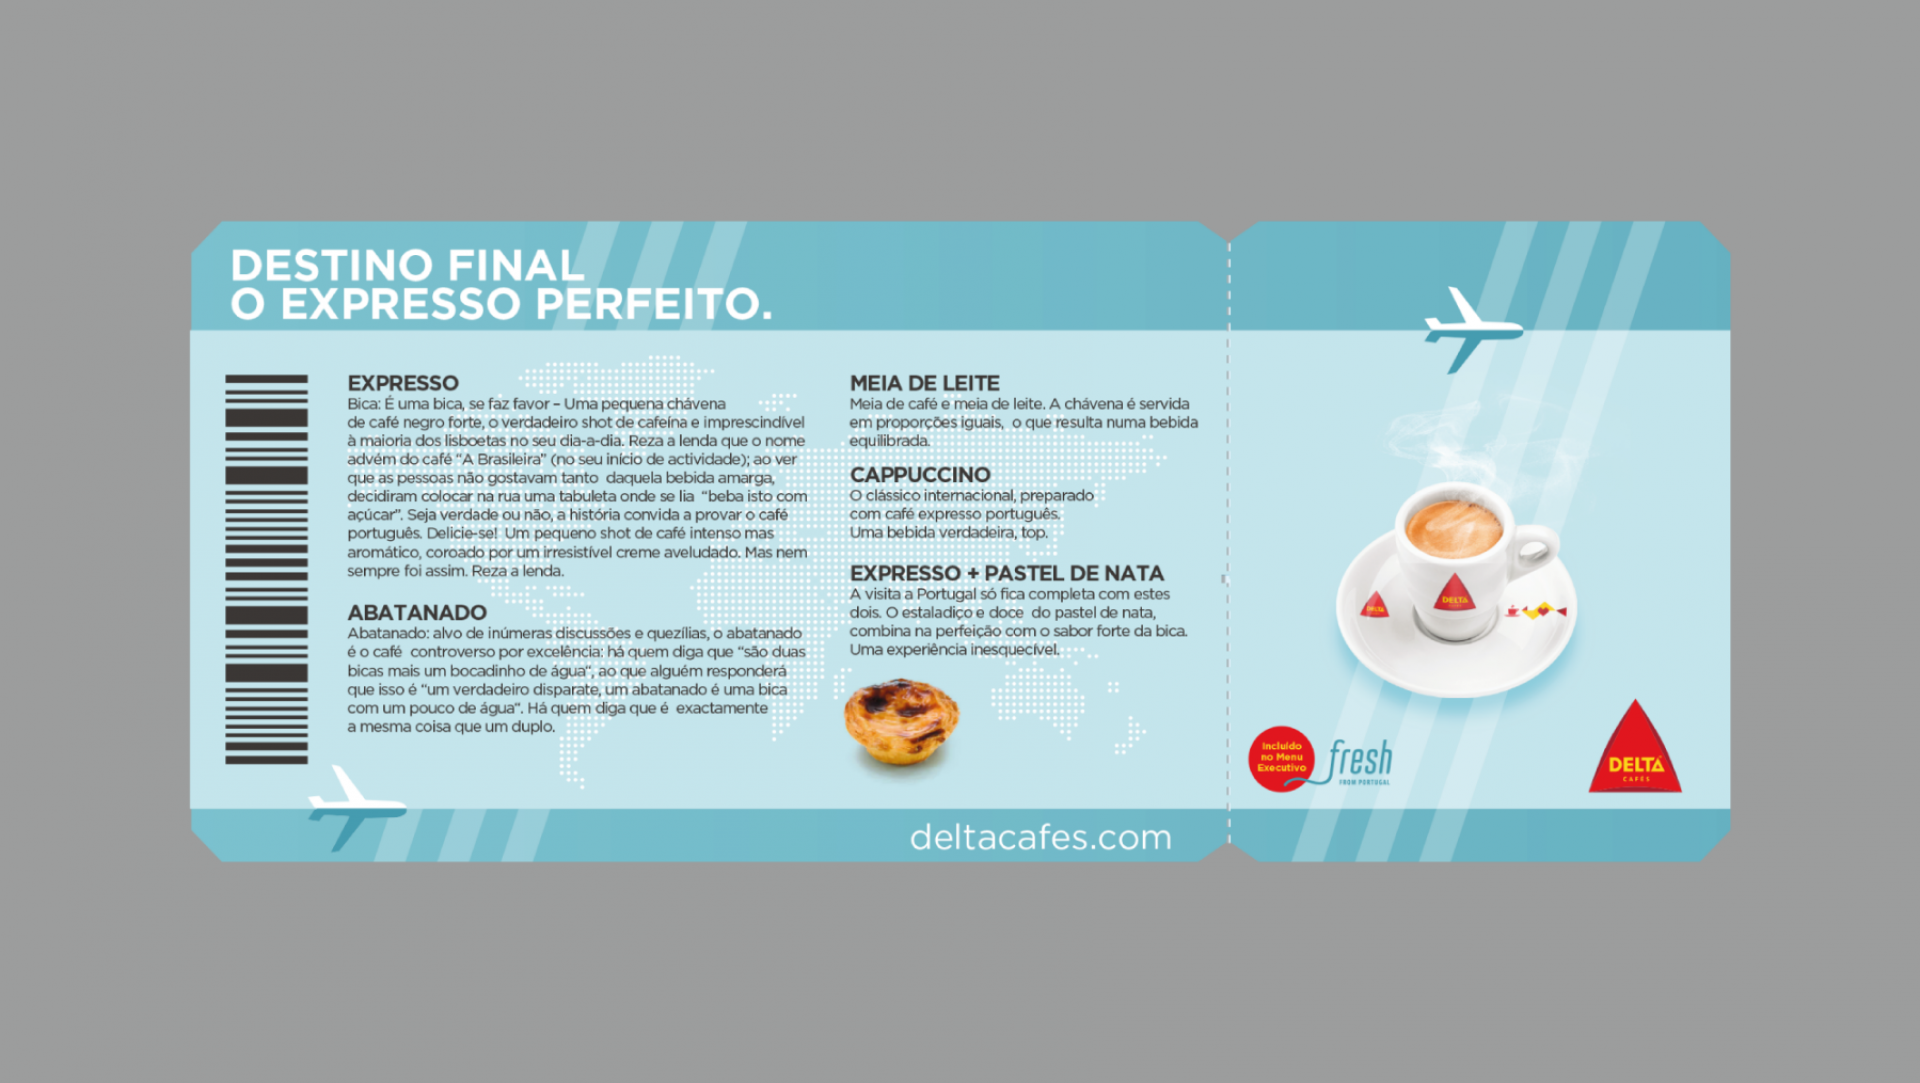 Delta Cafés - Food and drink